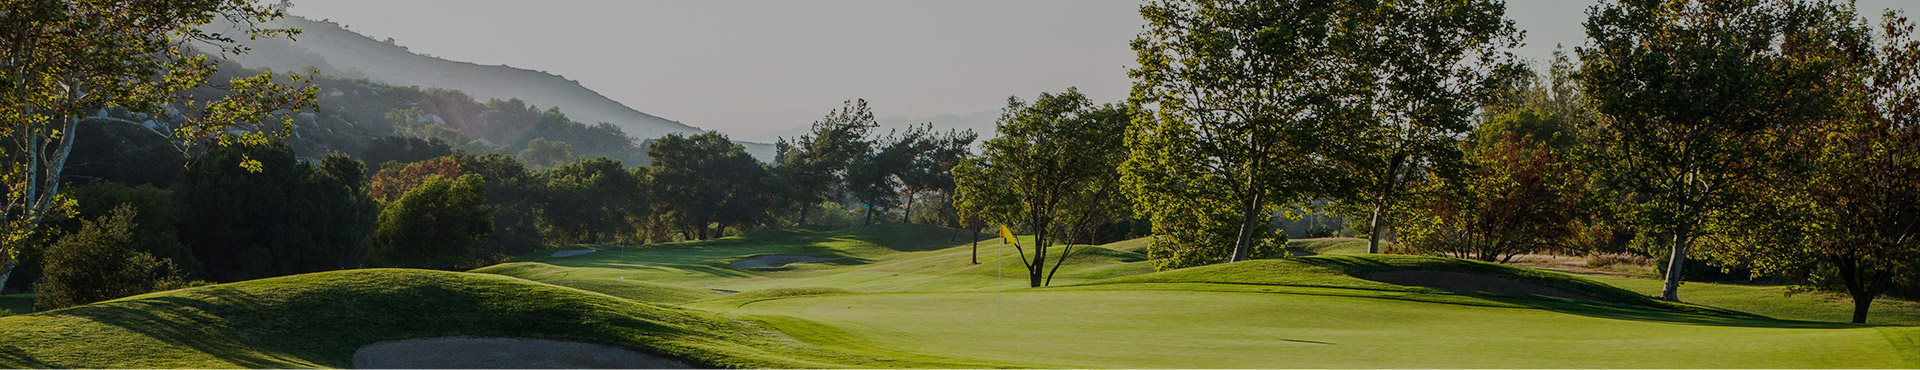 Golf course at Temecula Creek Inn